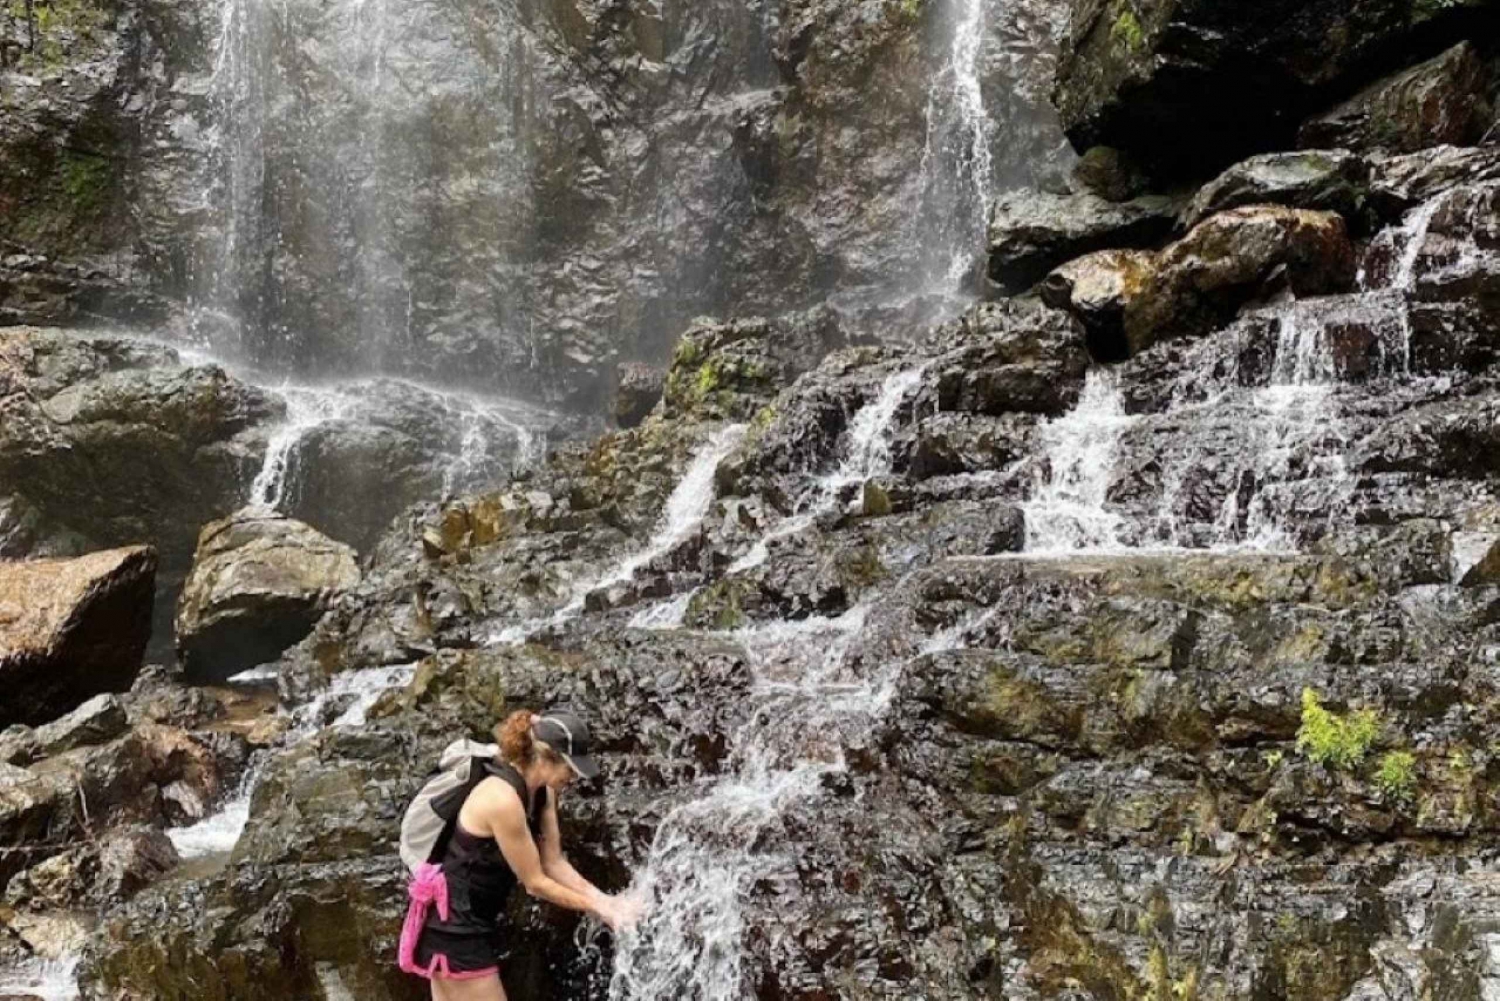 San Juan, PR: Vandra till ett dolt vattenfallsäventyr